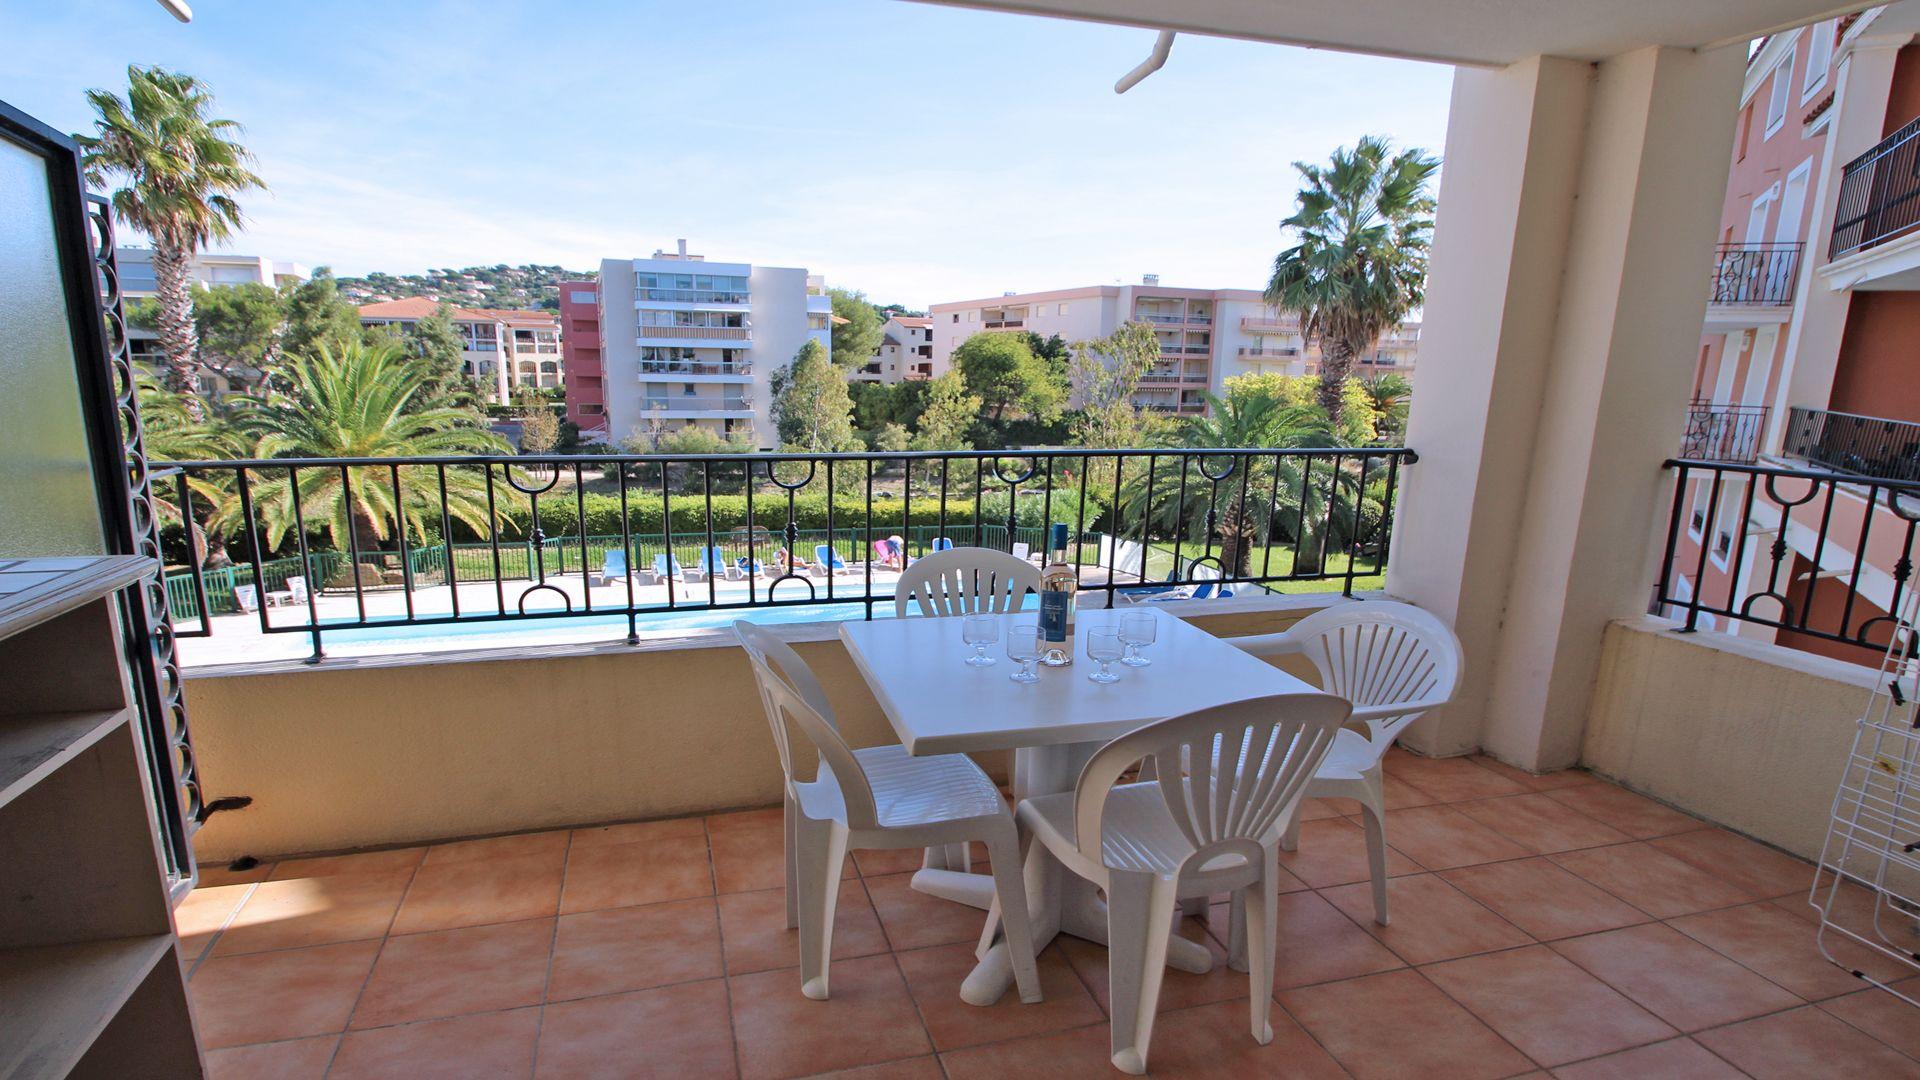 Ferienwohnung für 5 Personen ca. 35 m² i Ferienwohnung  Côte d'Azur